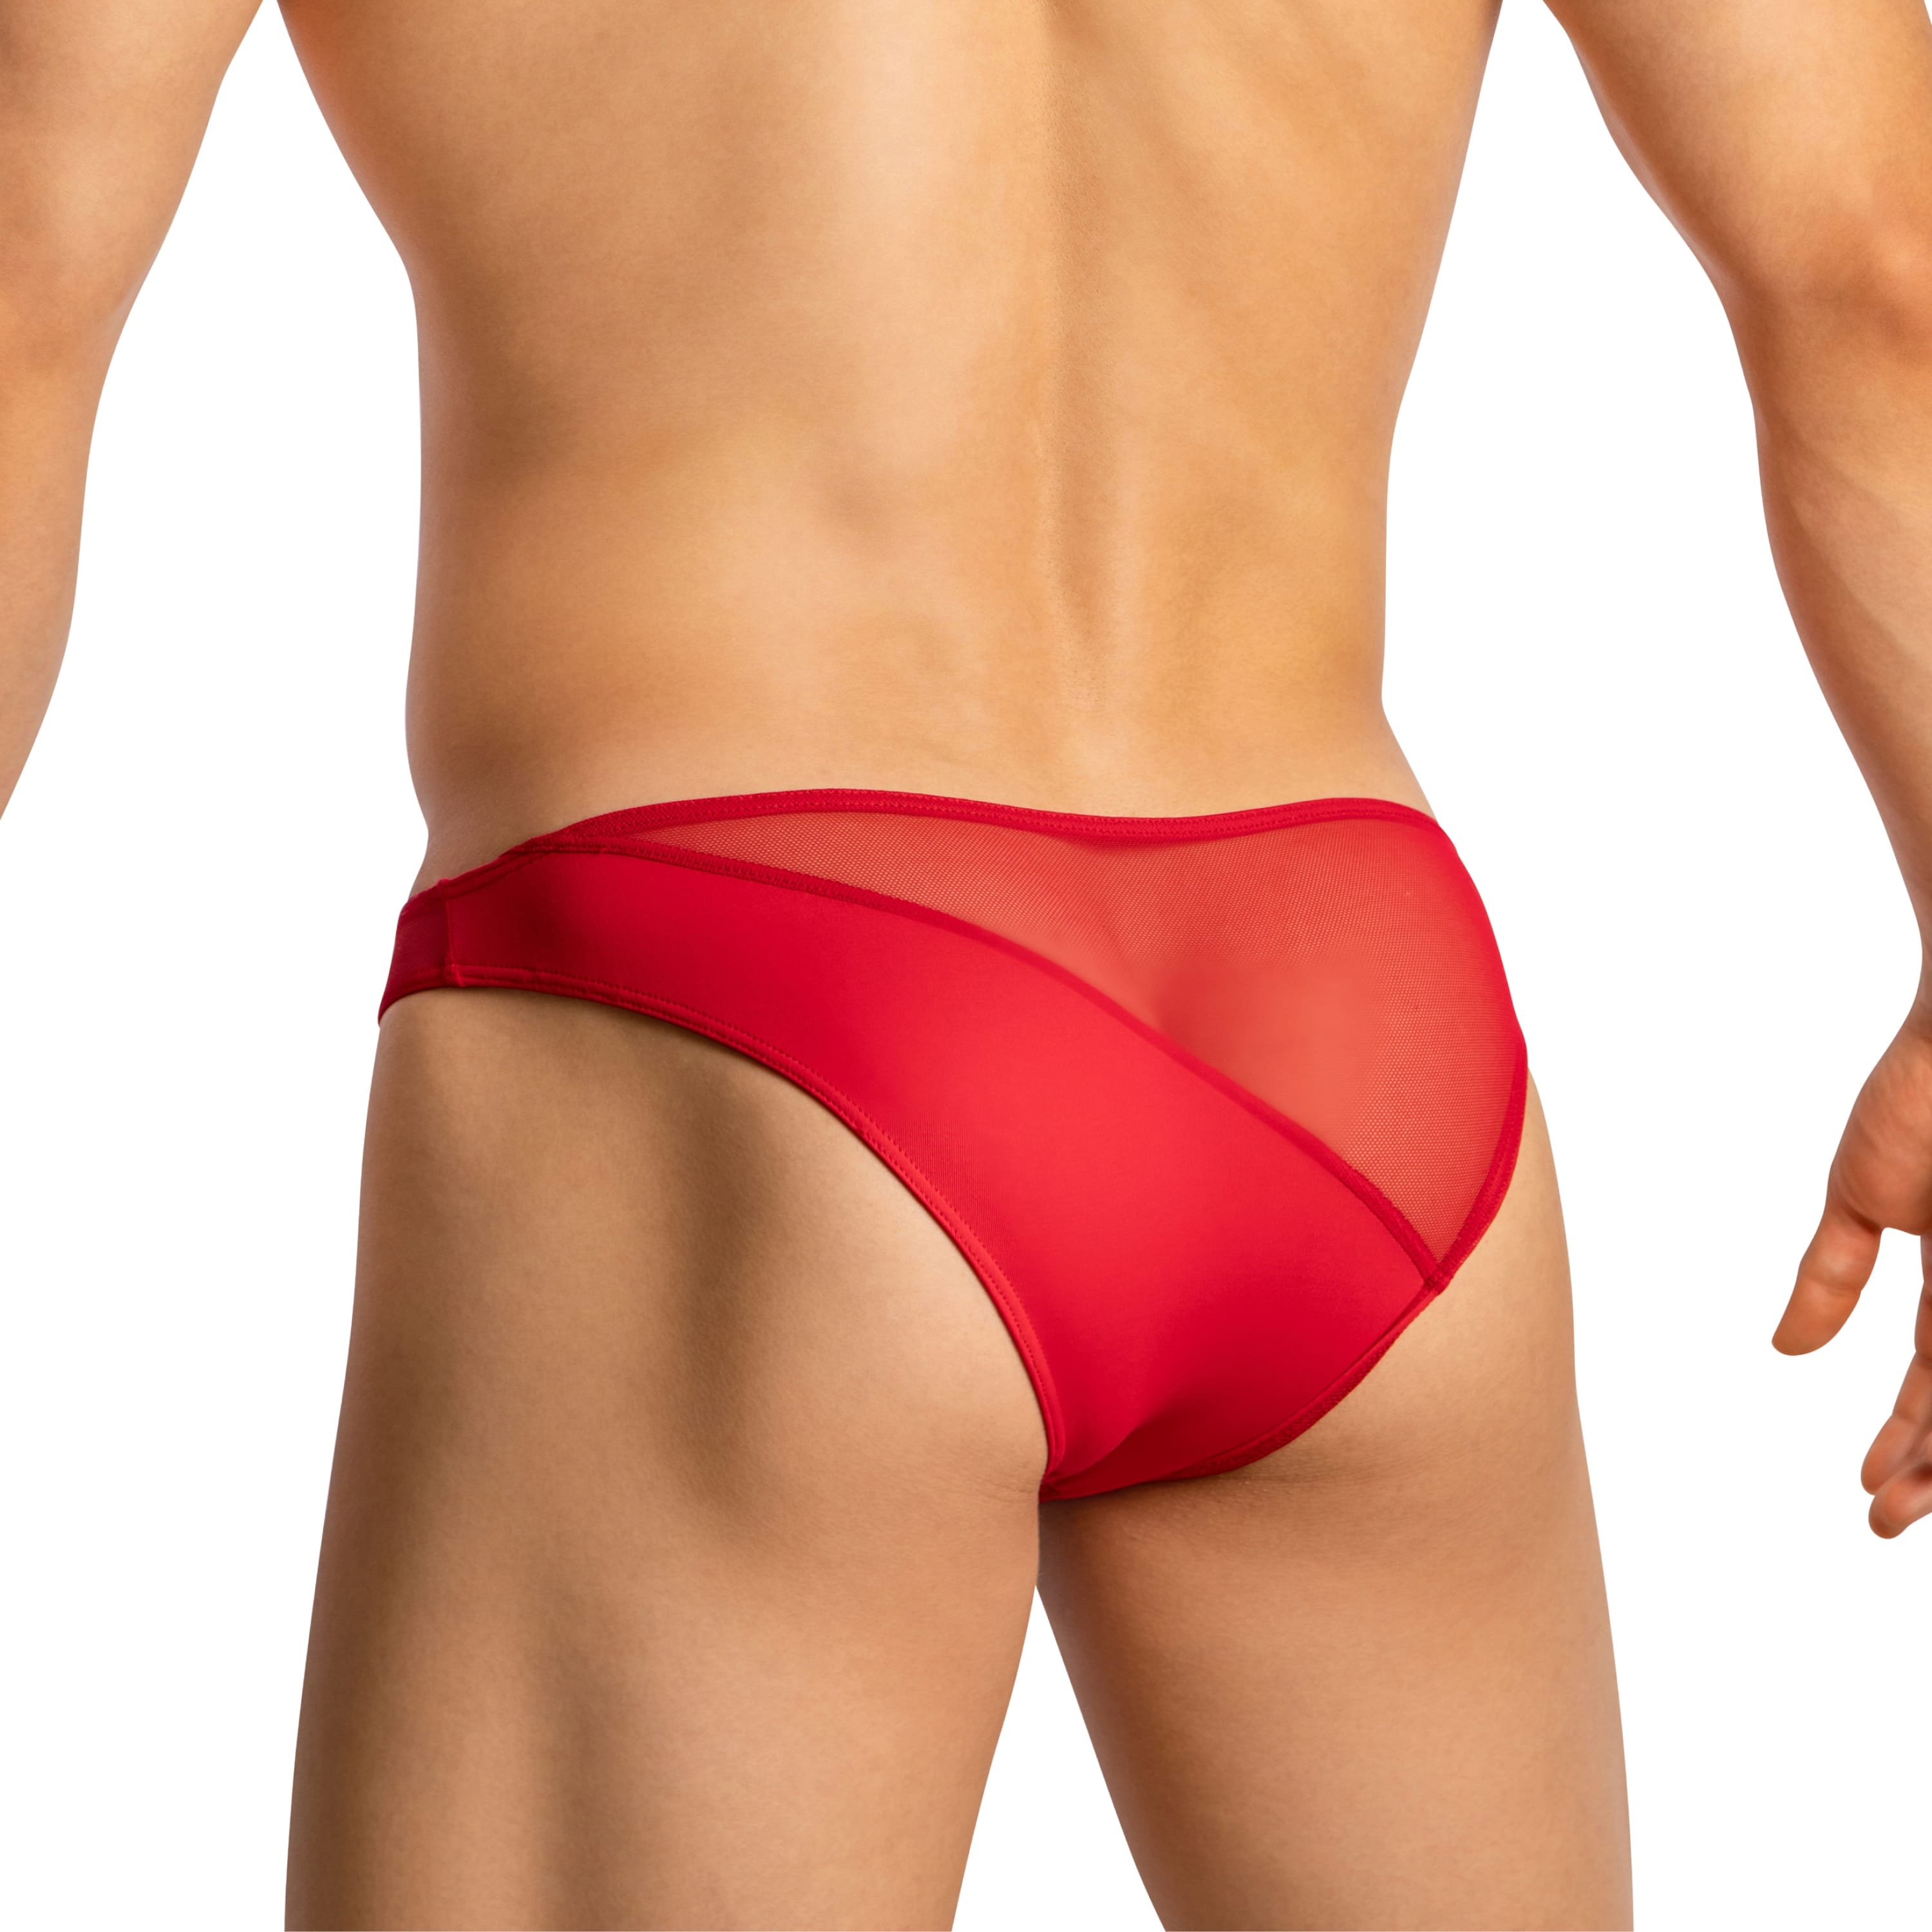 Good Devil GDJ019 Half Mesh Thong Tempting Men's Underwear Collection